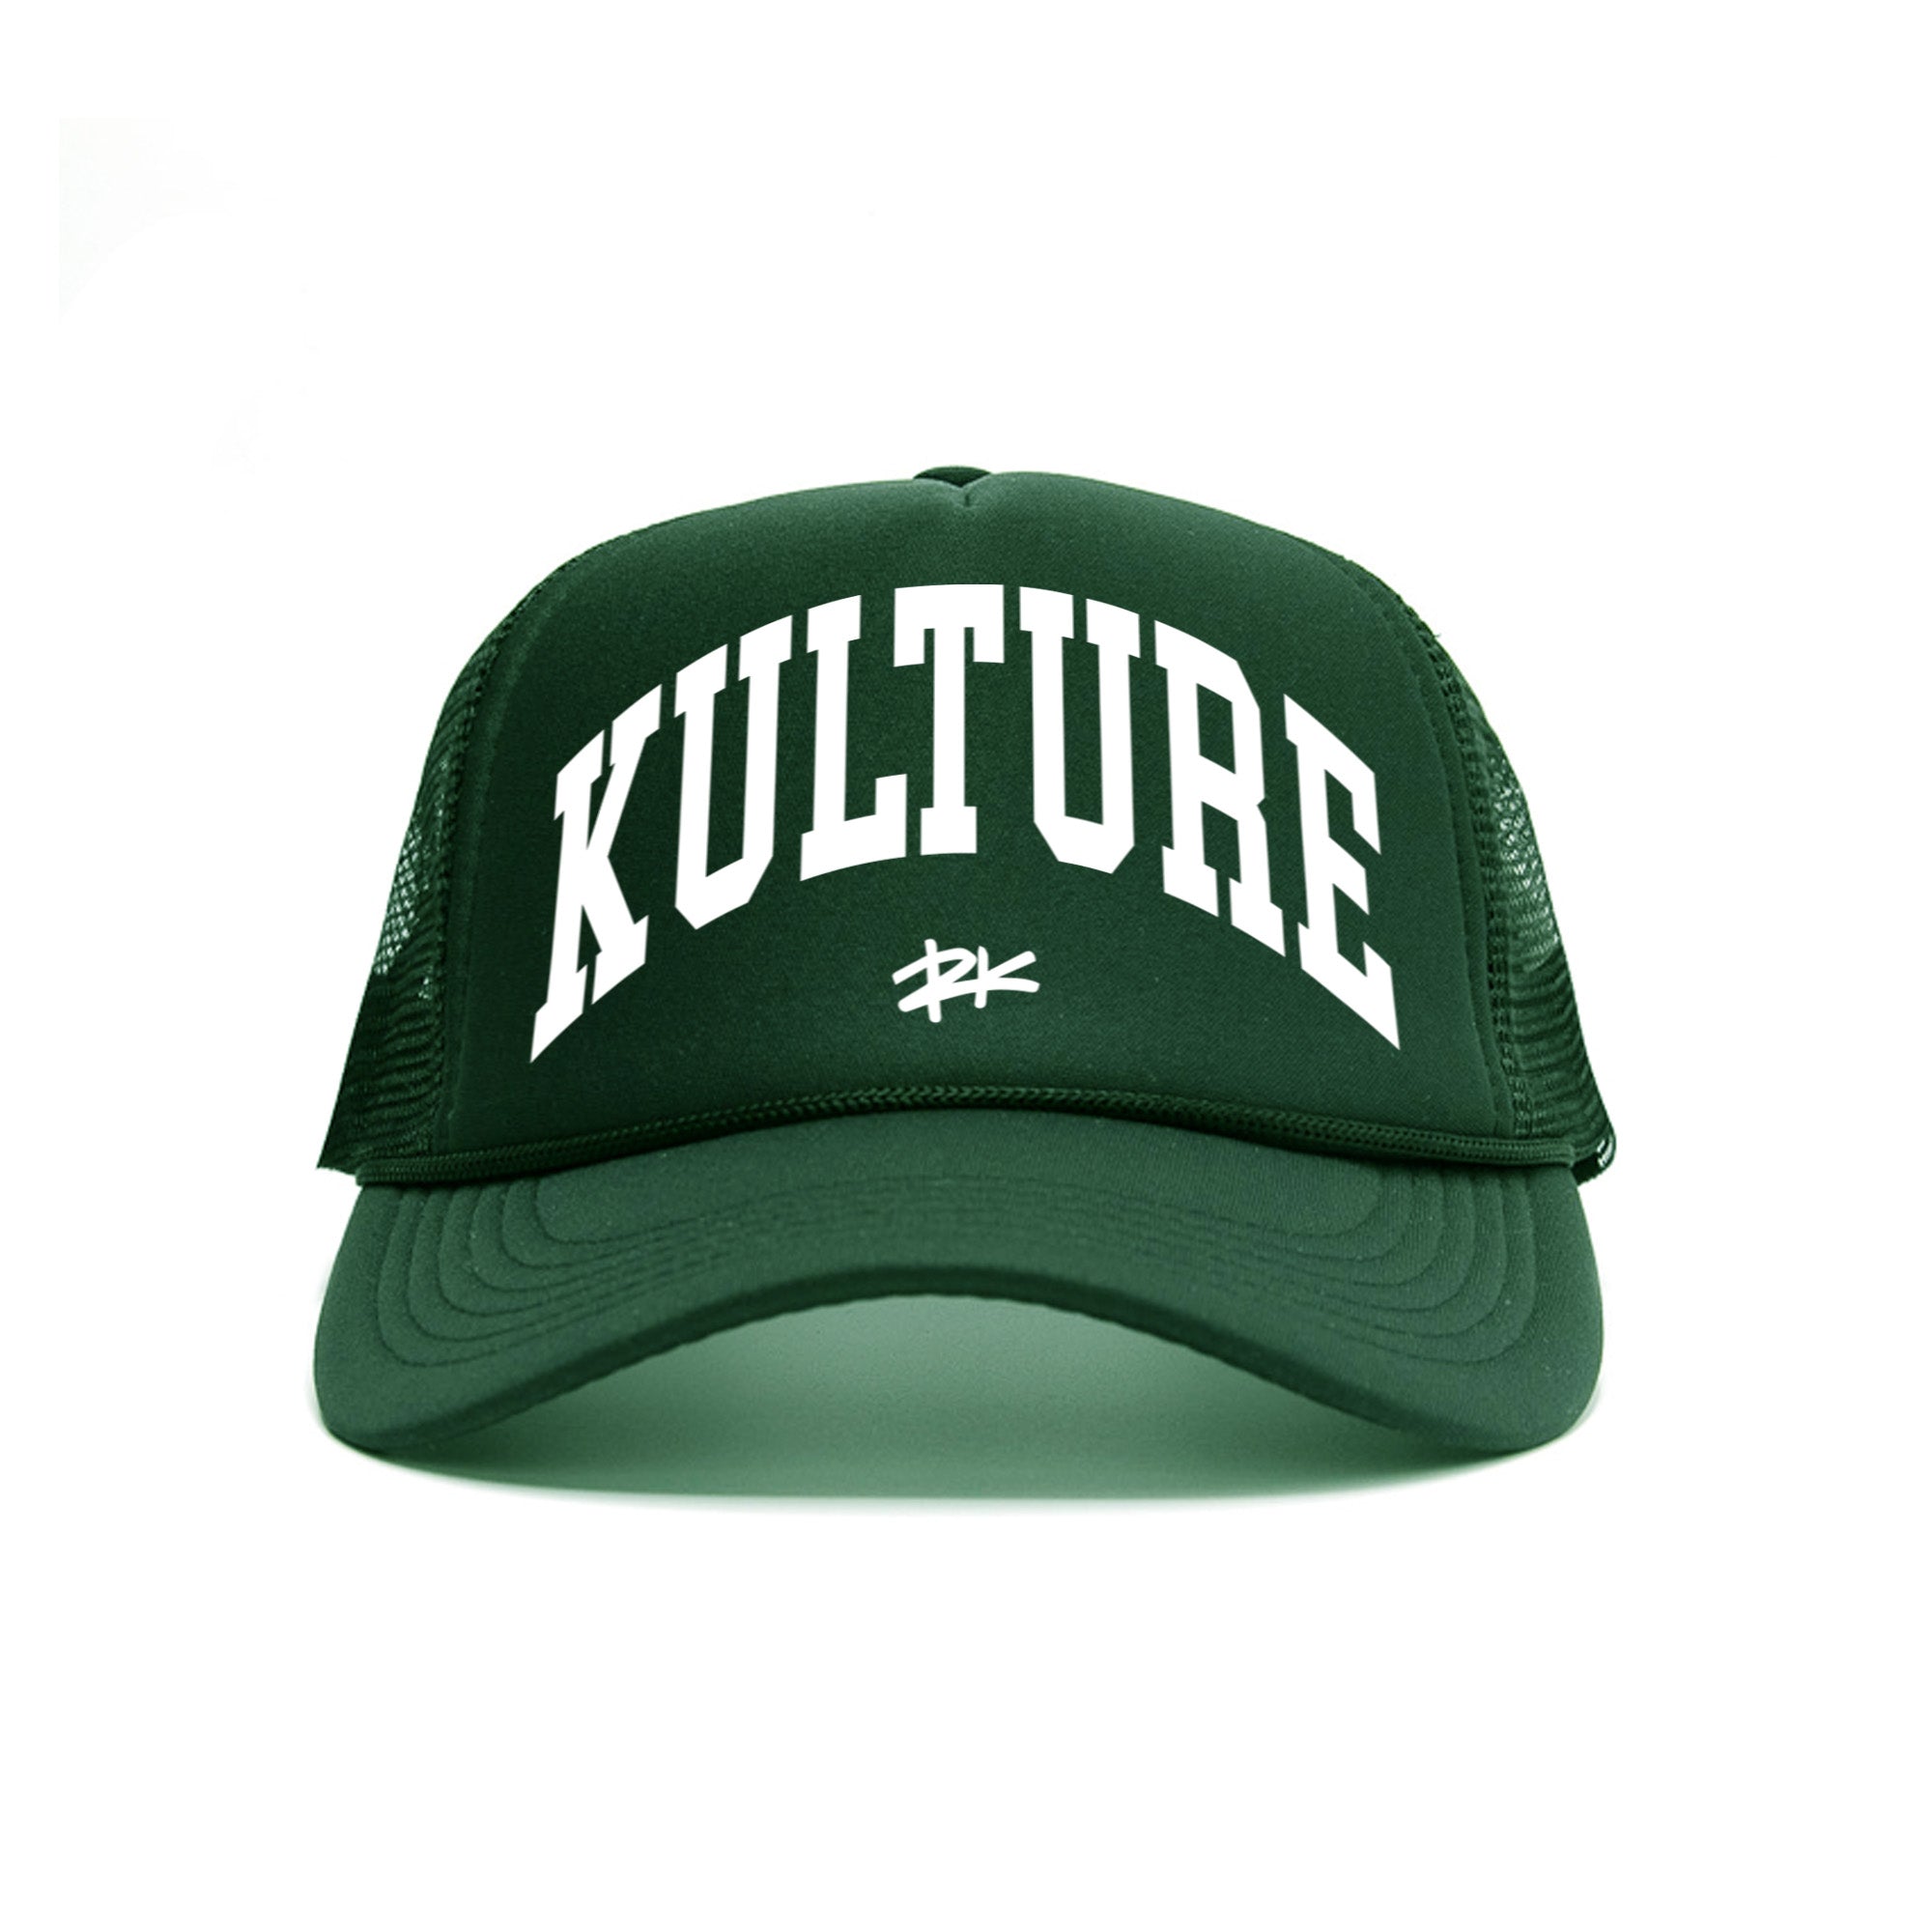 RK Collegiate Trucker Hat